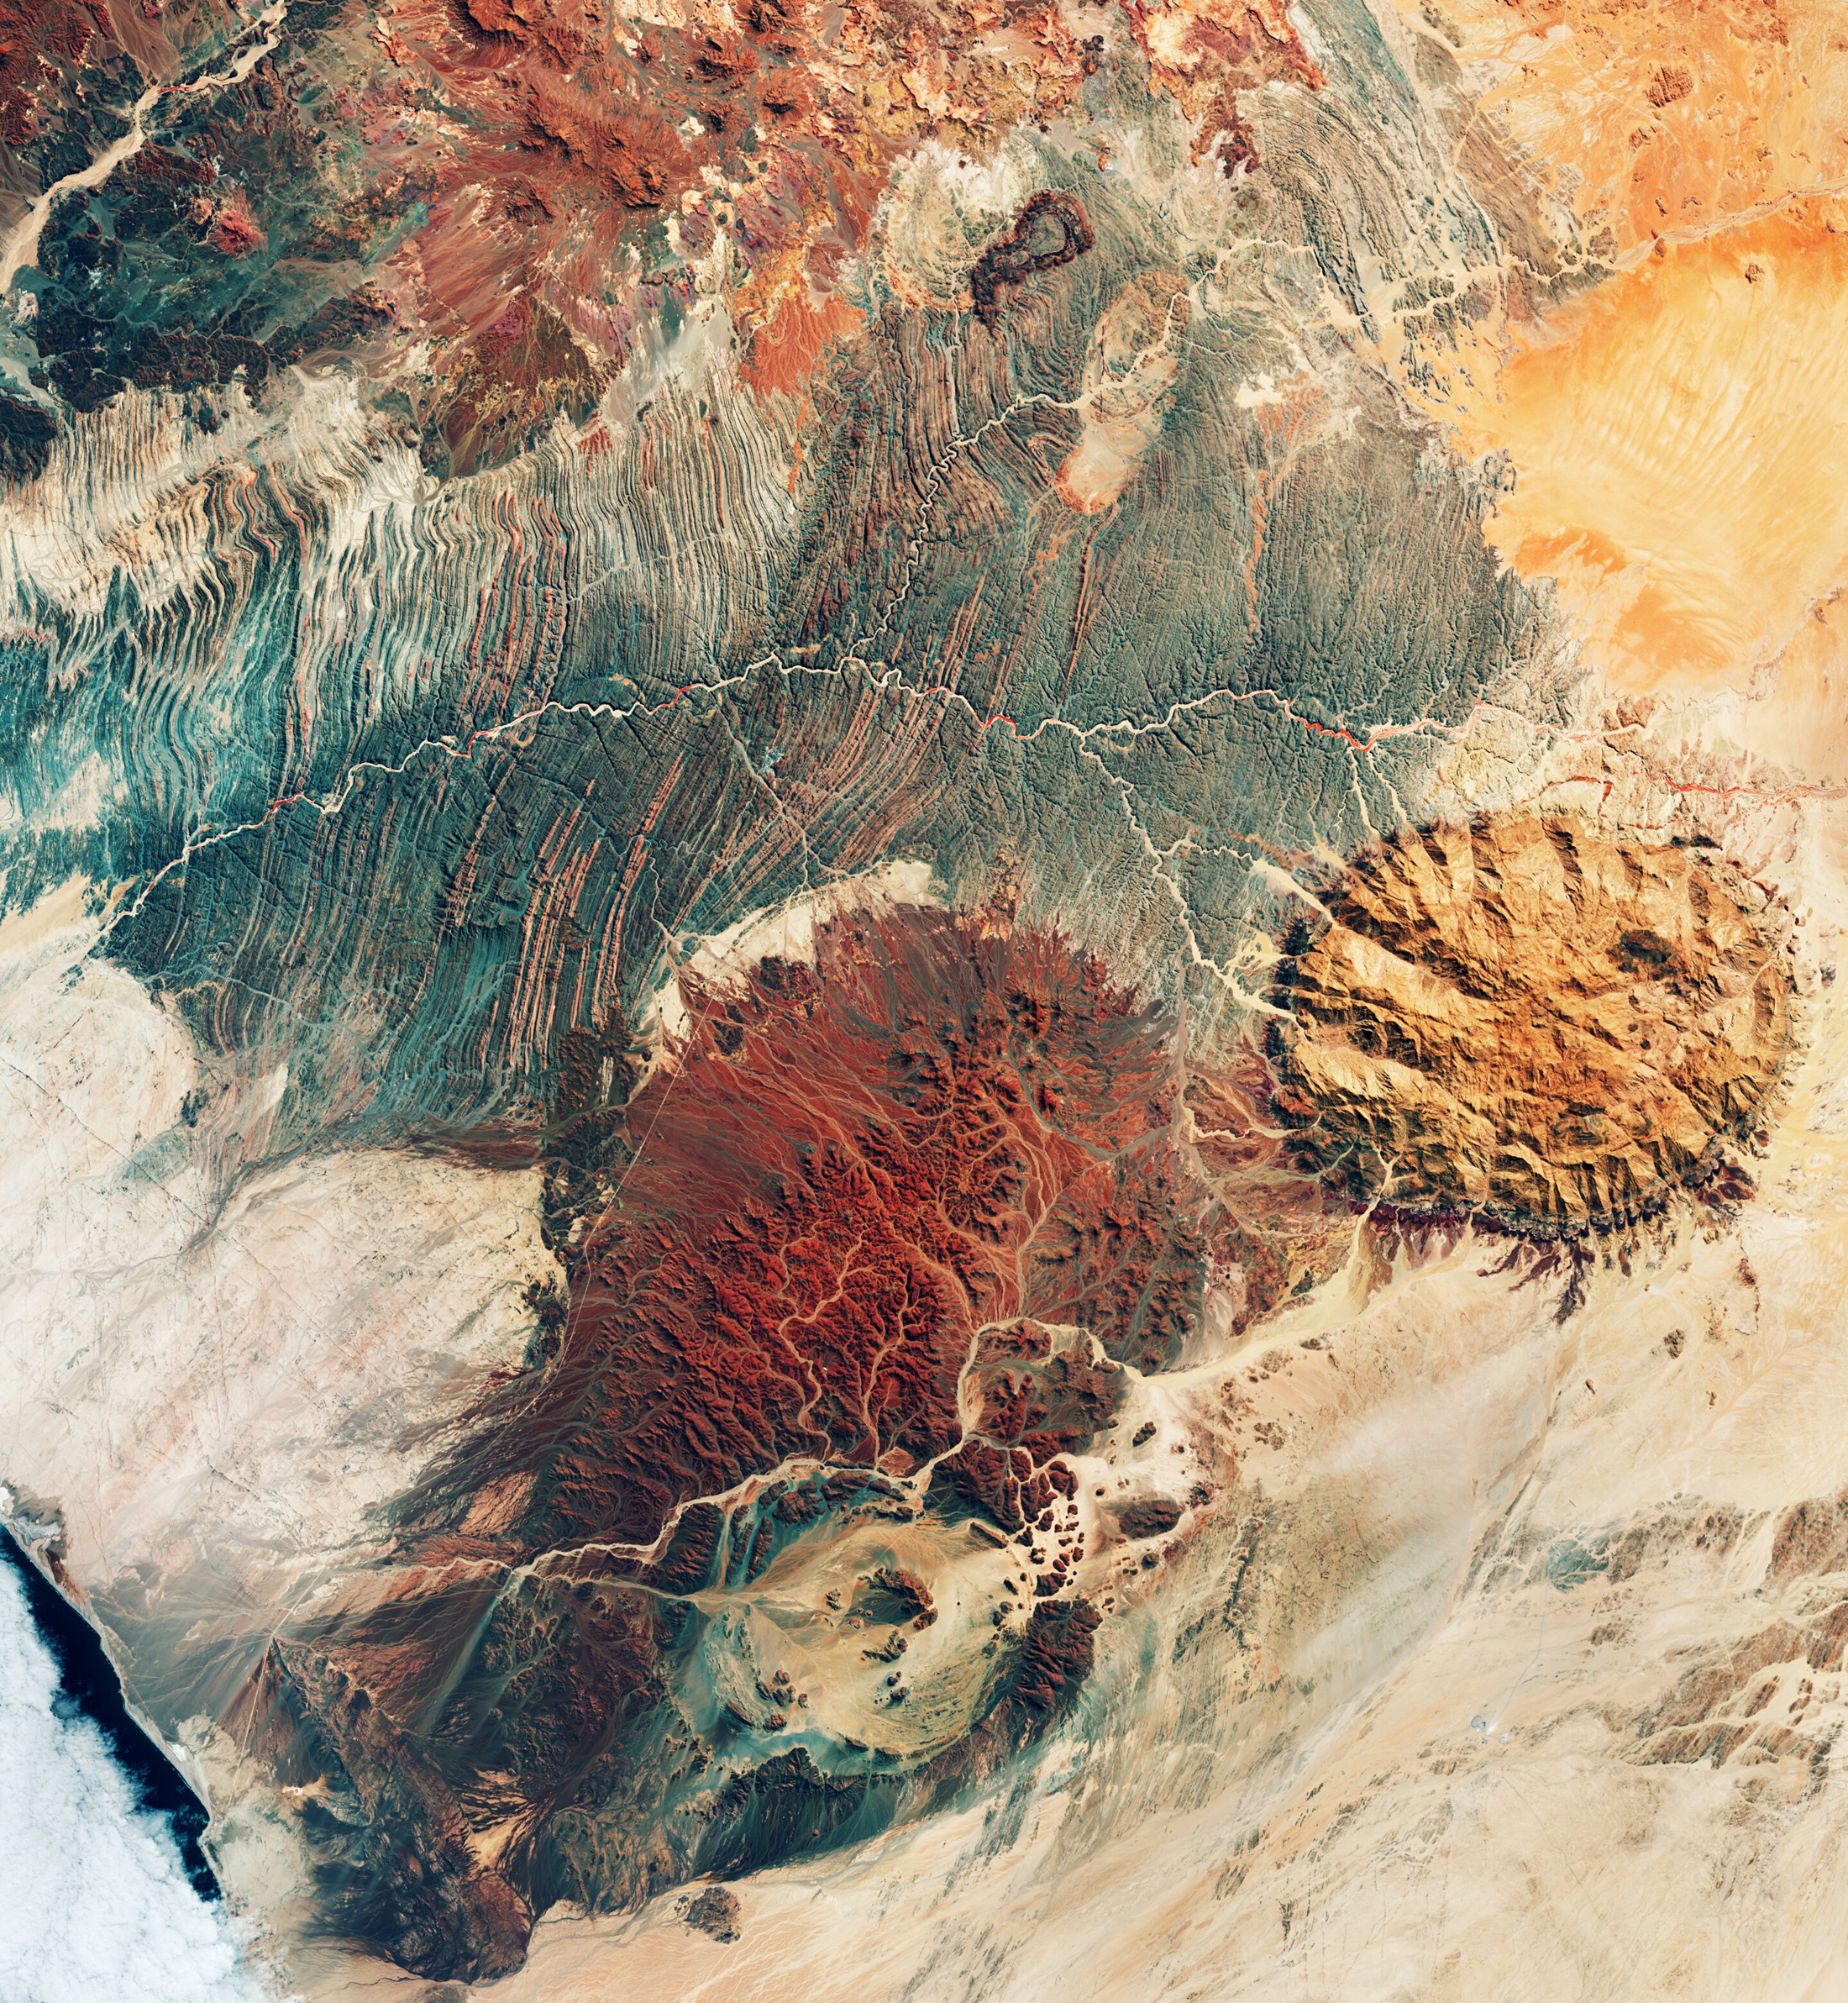 Iako ova slika može izgledati kao da prikazuje površinu Marsa, ona je zapravo snimljena tijekom misije Copernicus Sentinel-2 i otkriva zadivljujući teren sjeverozapadne Namibije. Zasluge: Copernicus-ESA.